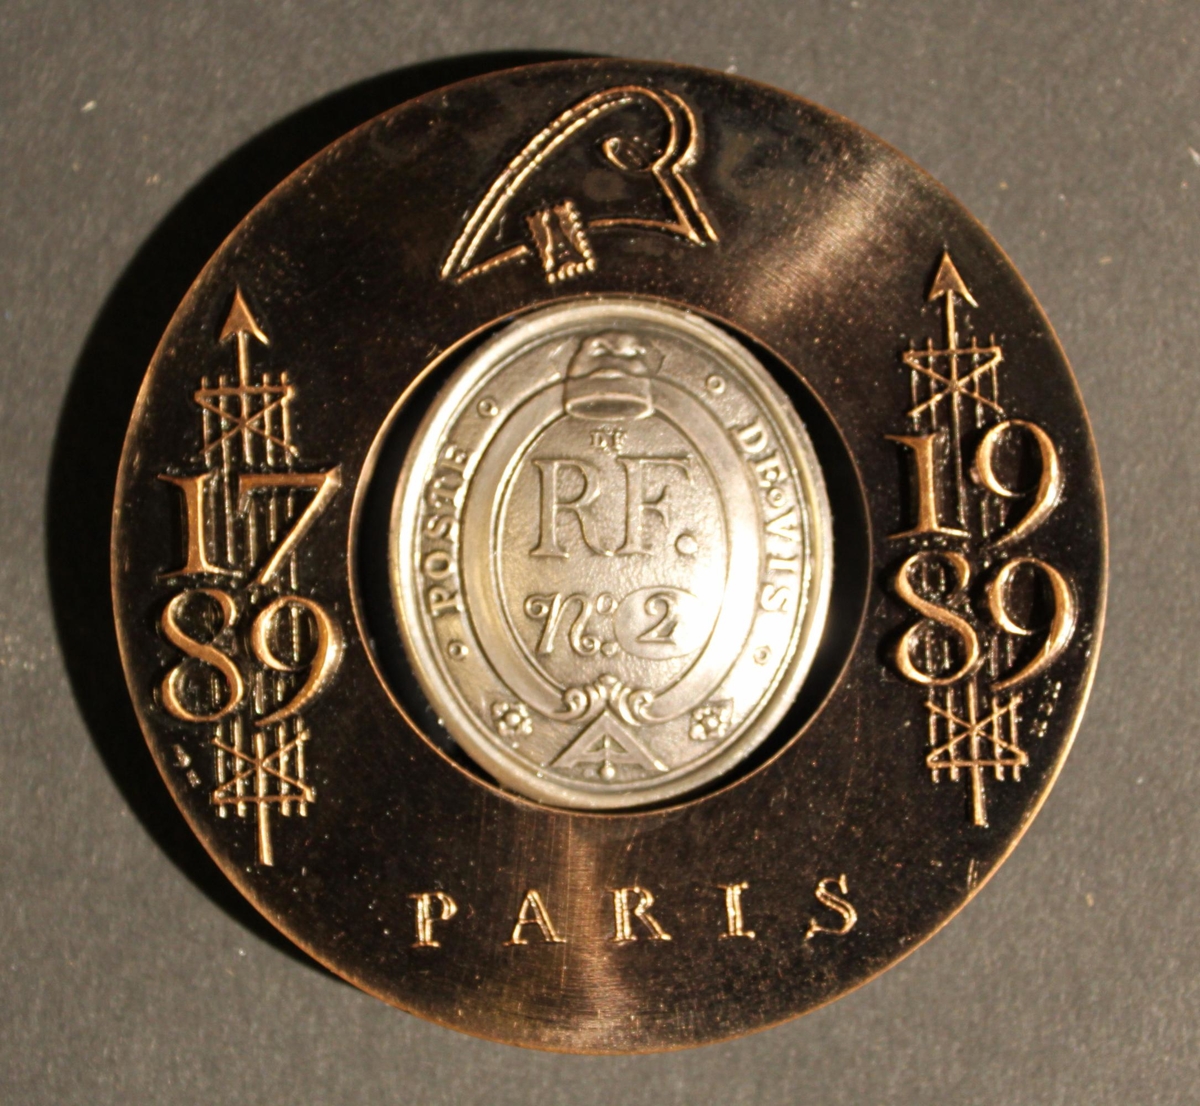 Medalj i brons och silver. Medaljen består av två delar,
denyttre är cirkulär och i brons, i dess mitt är ett cirkelformat
hål. Ihålet är en medalj med form av en "vapensköld" i silver
placerad.